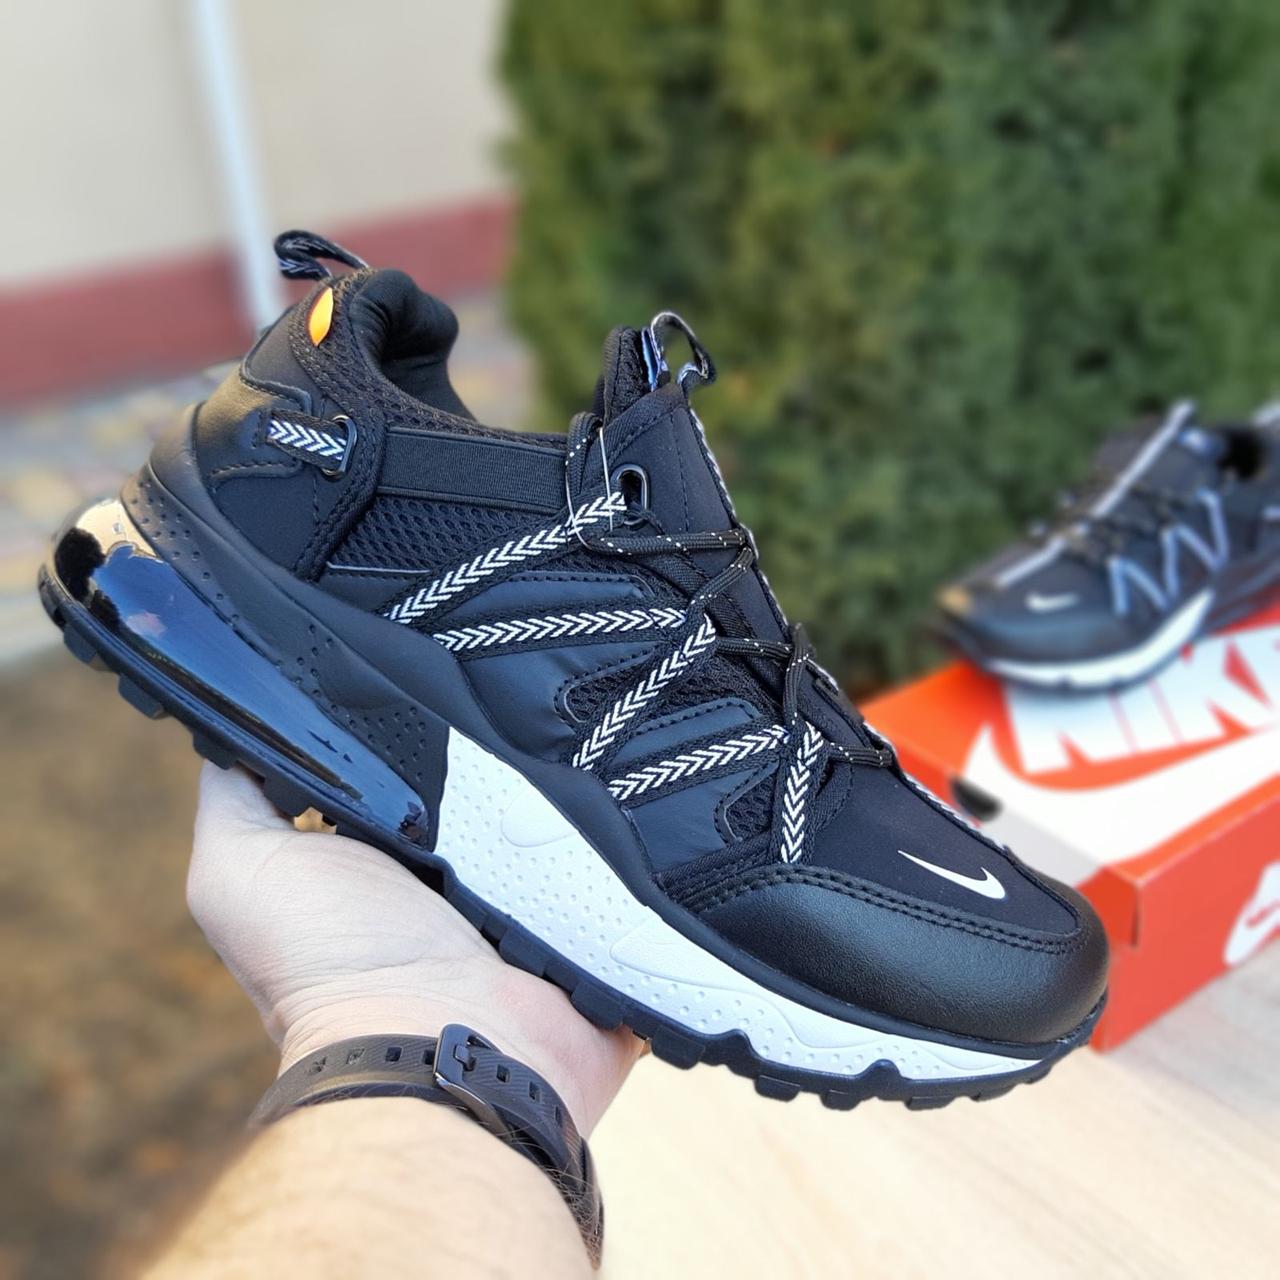 

Мужские кроссовки в стиле Nike Air Max 270 Bowfin, ткань, кожа, черные с белым 42(26,5 см)